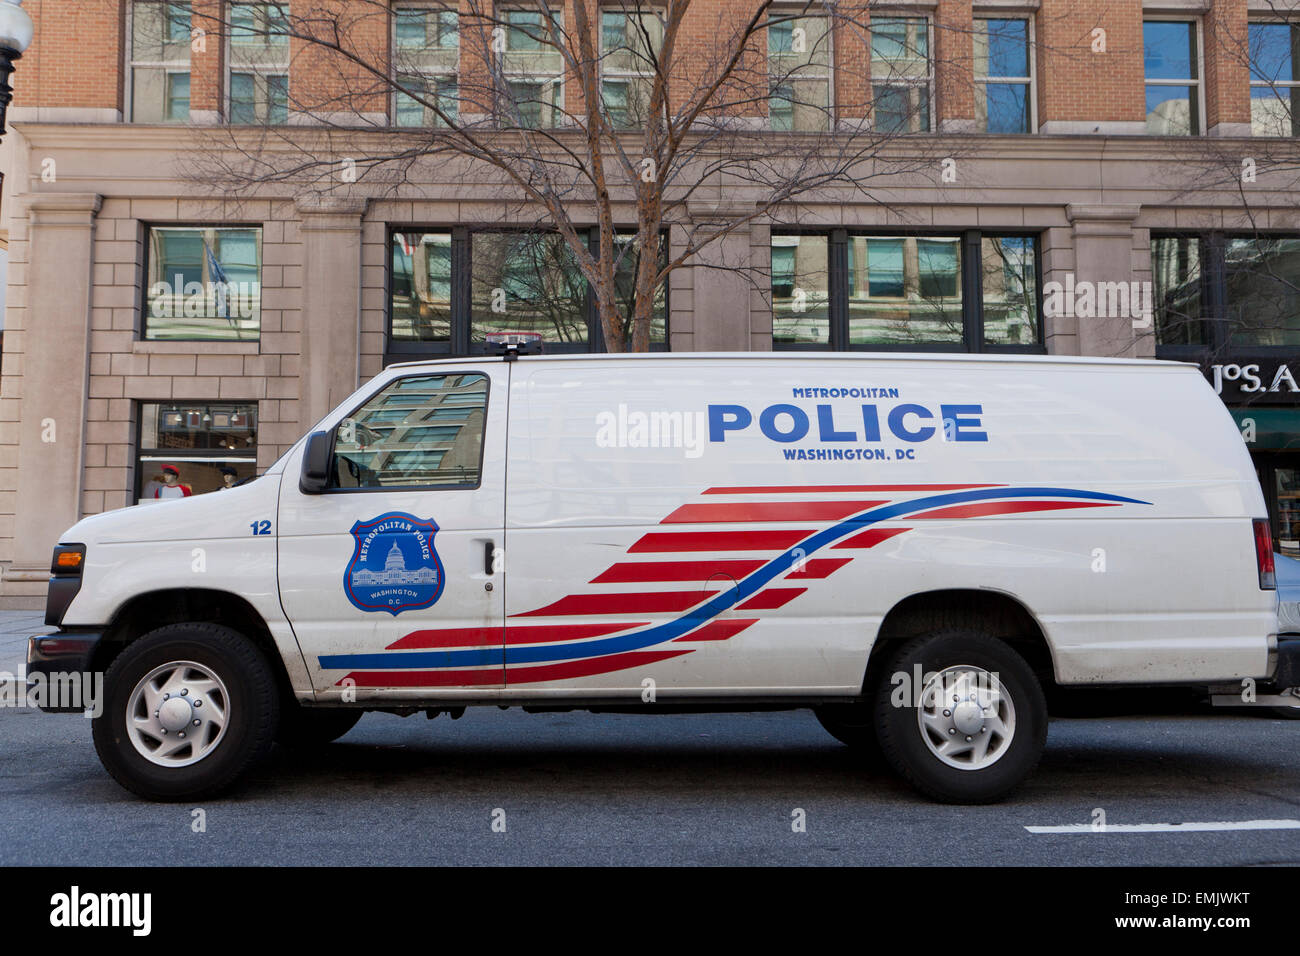 Metropolitan Police van - Washington, DC USA Stock Photo